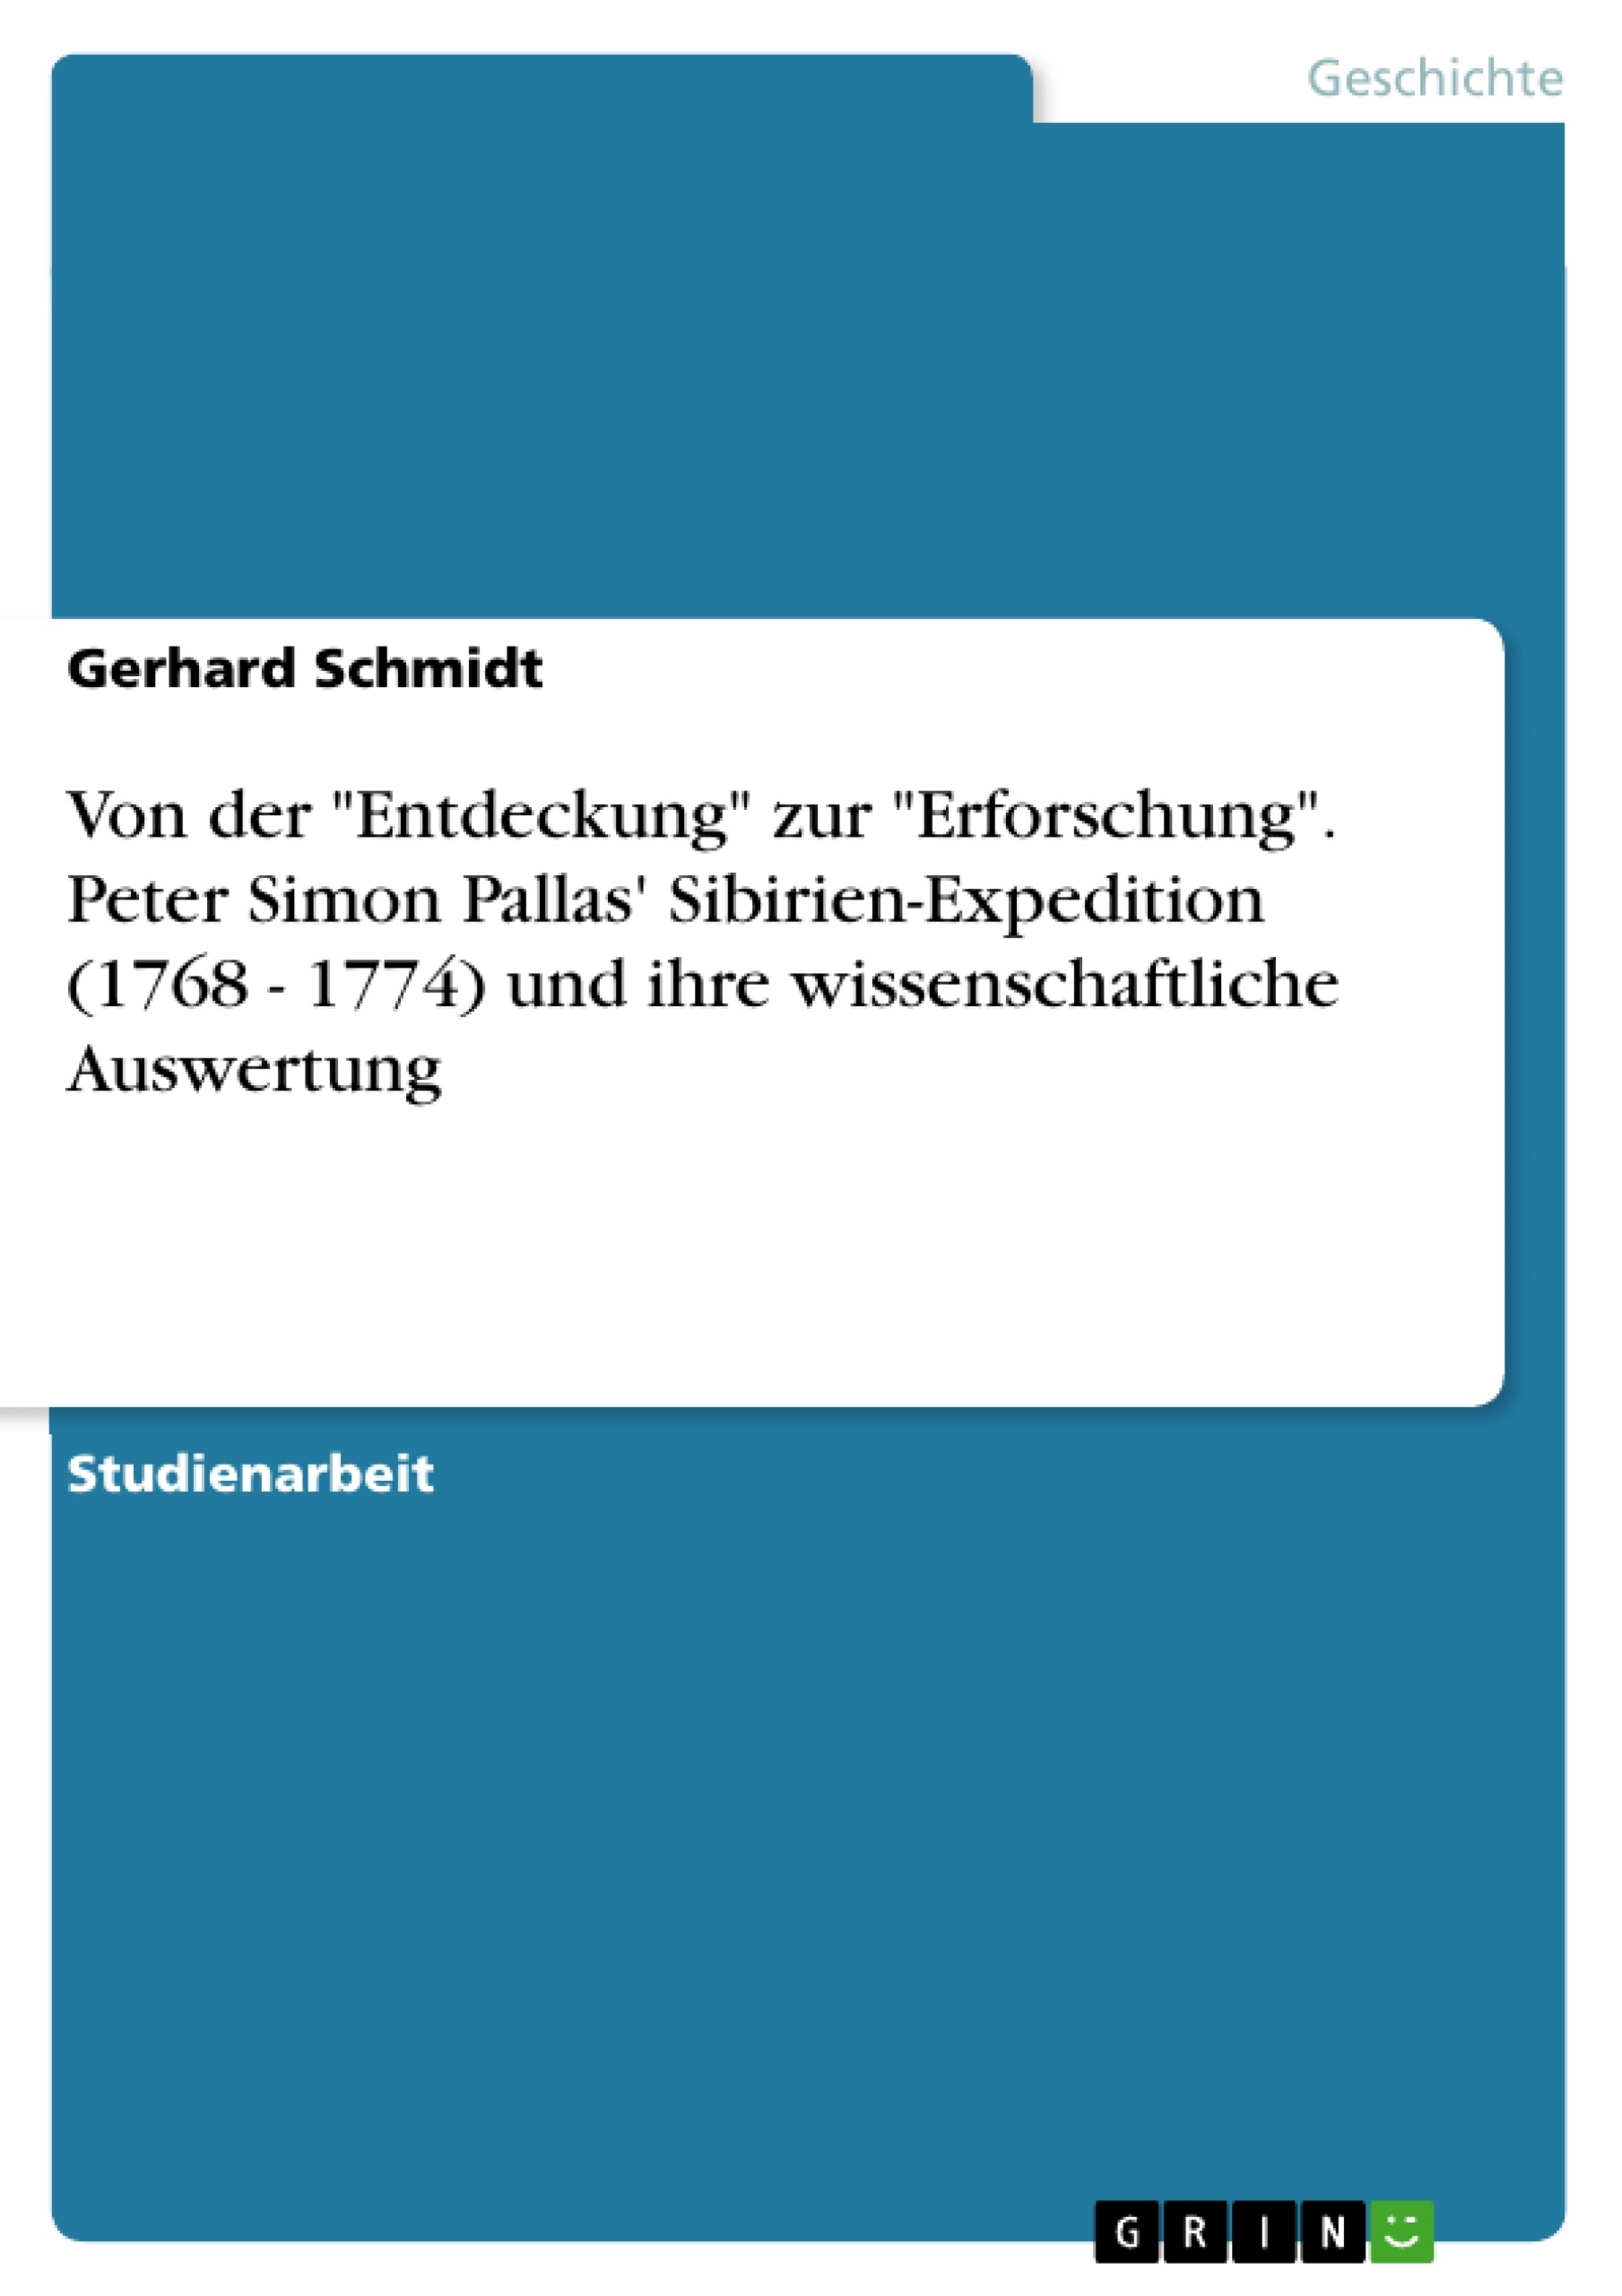 Title: Von der "Entdeckung" zur "Erforschung". Peter Simon Pallas' Sibirien-Expedition (1768 - 1774) und ihre wissenschaftliche Auswertung